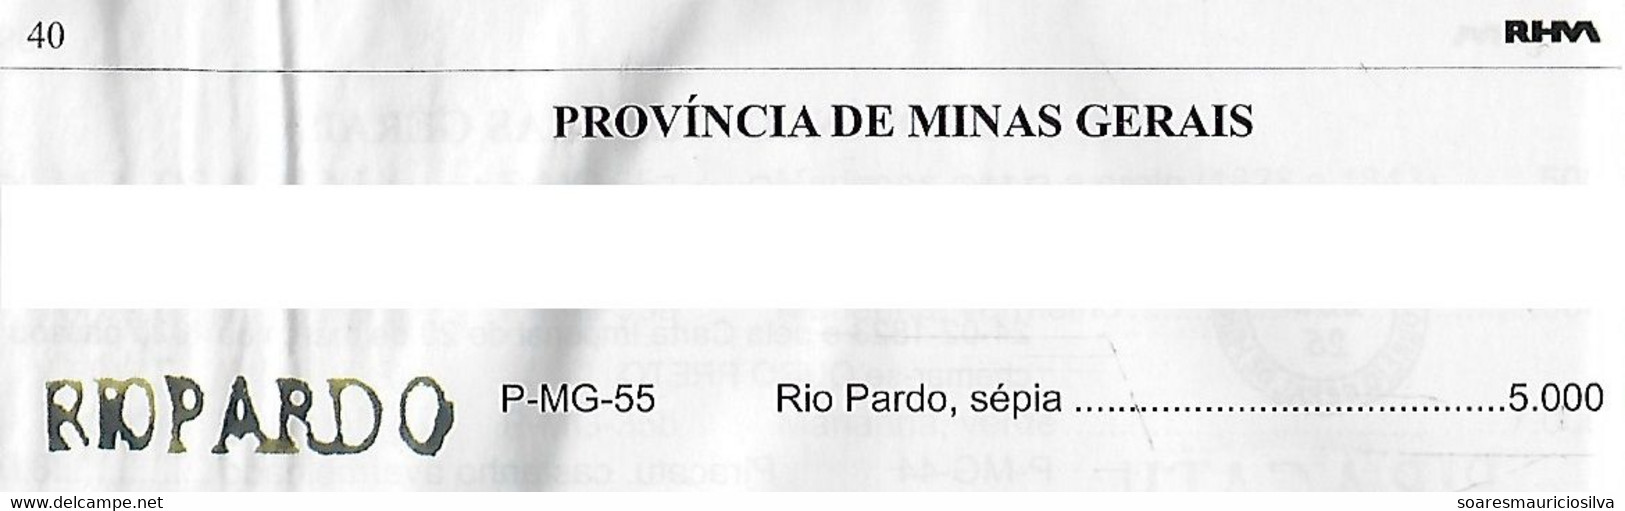 Brazil 1838 Fold Cover SP Public Service From Rio Pardo River To Ouro Preto Pre-philatelic Cancel P-MG-55 (cat US$5,000) - Vorphilatelie